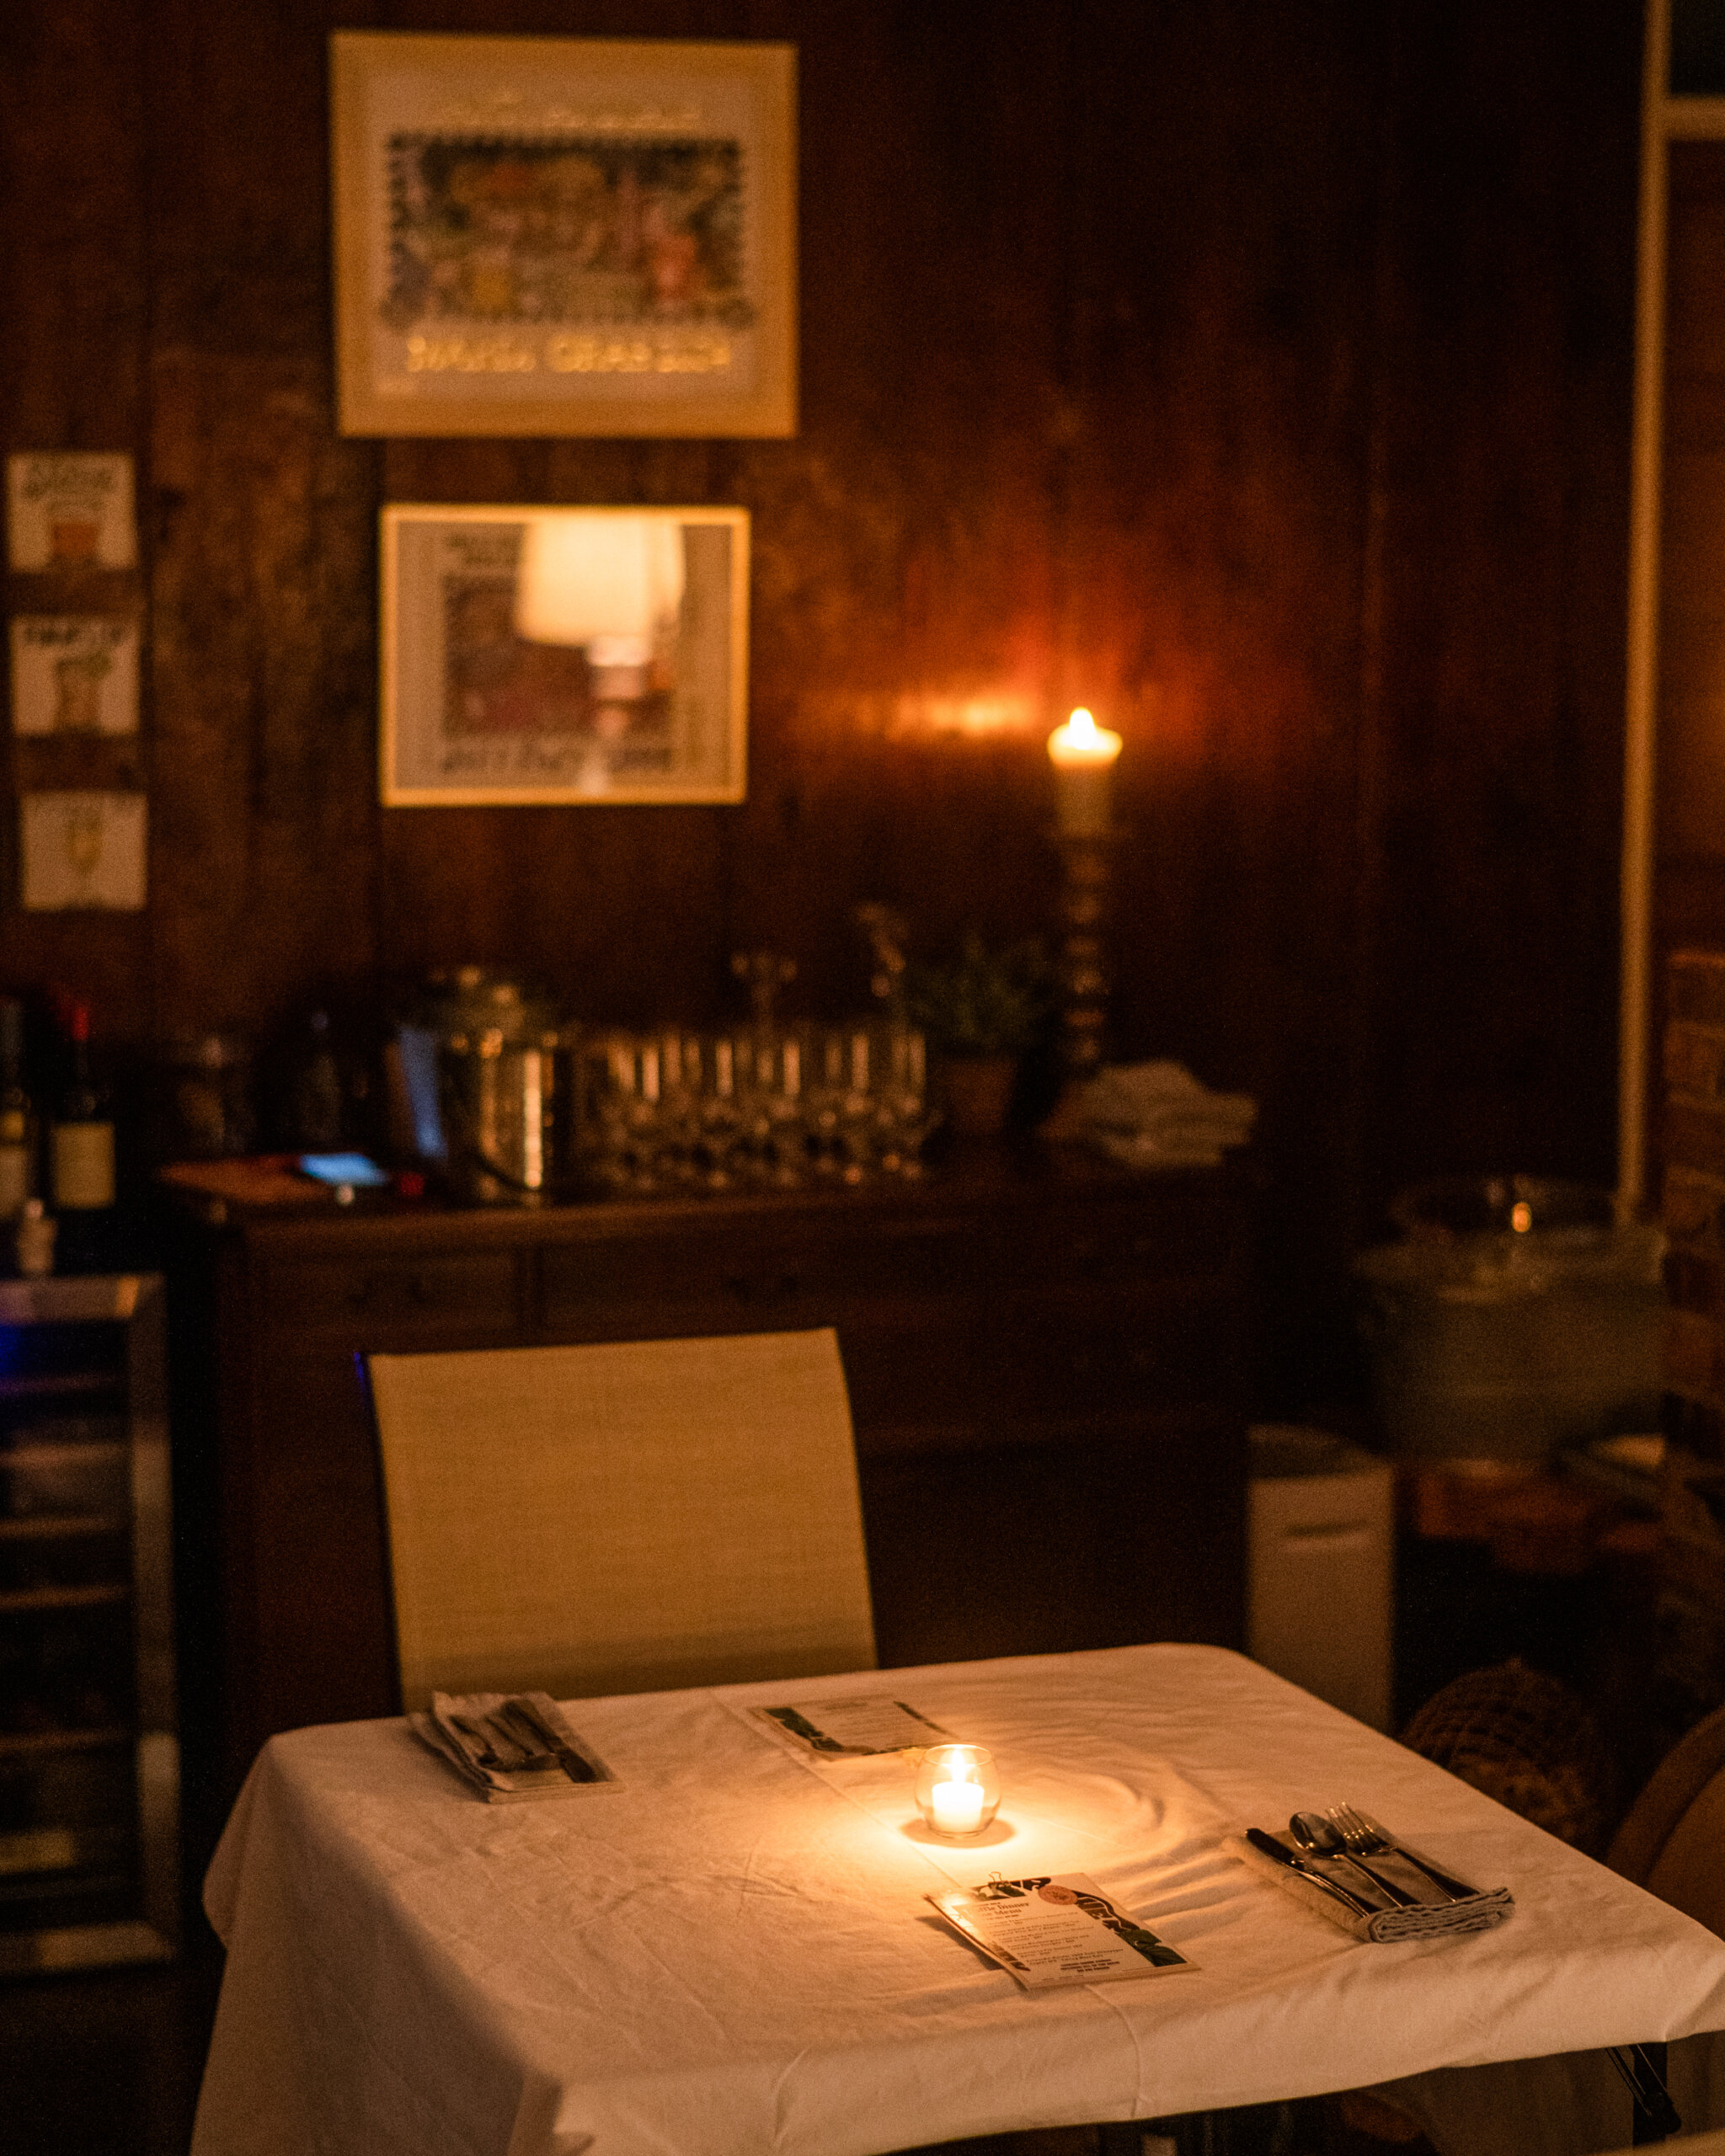 Detail of a dinner table inside the speakeasy